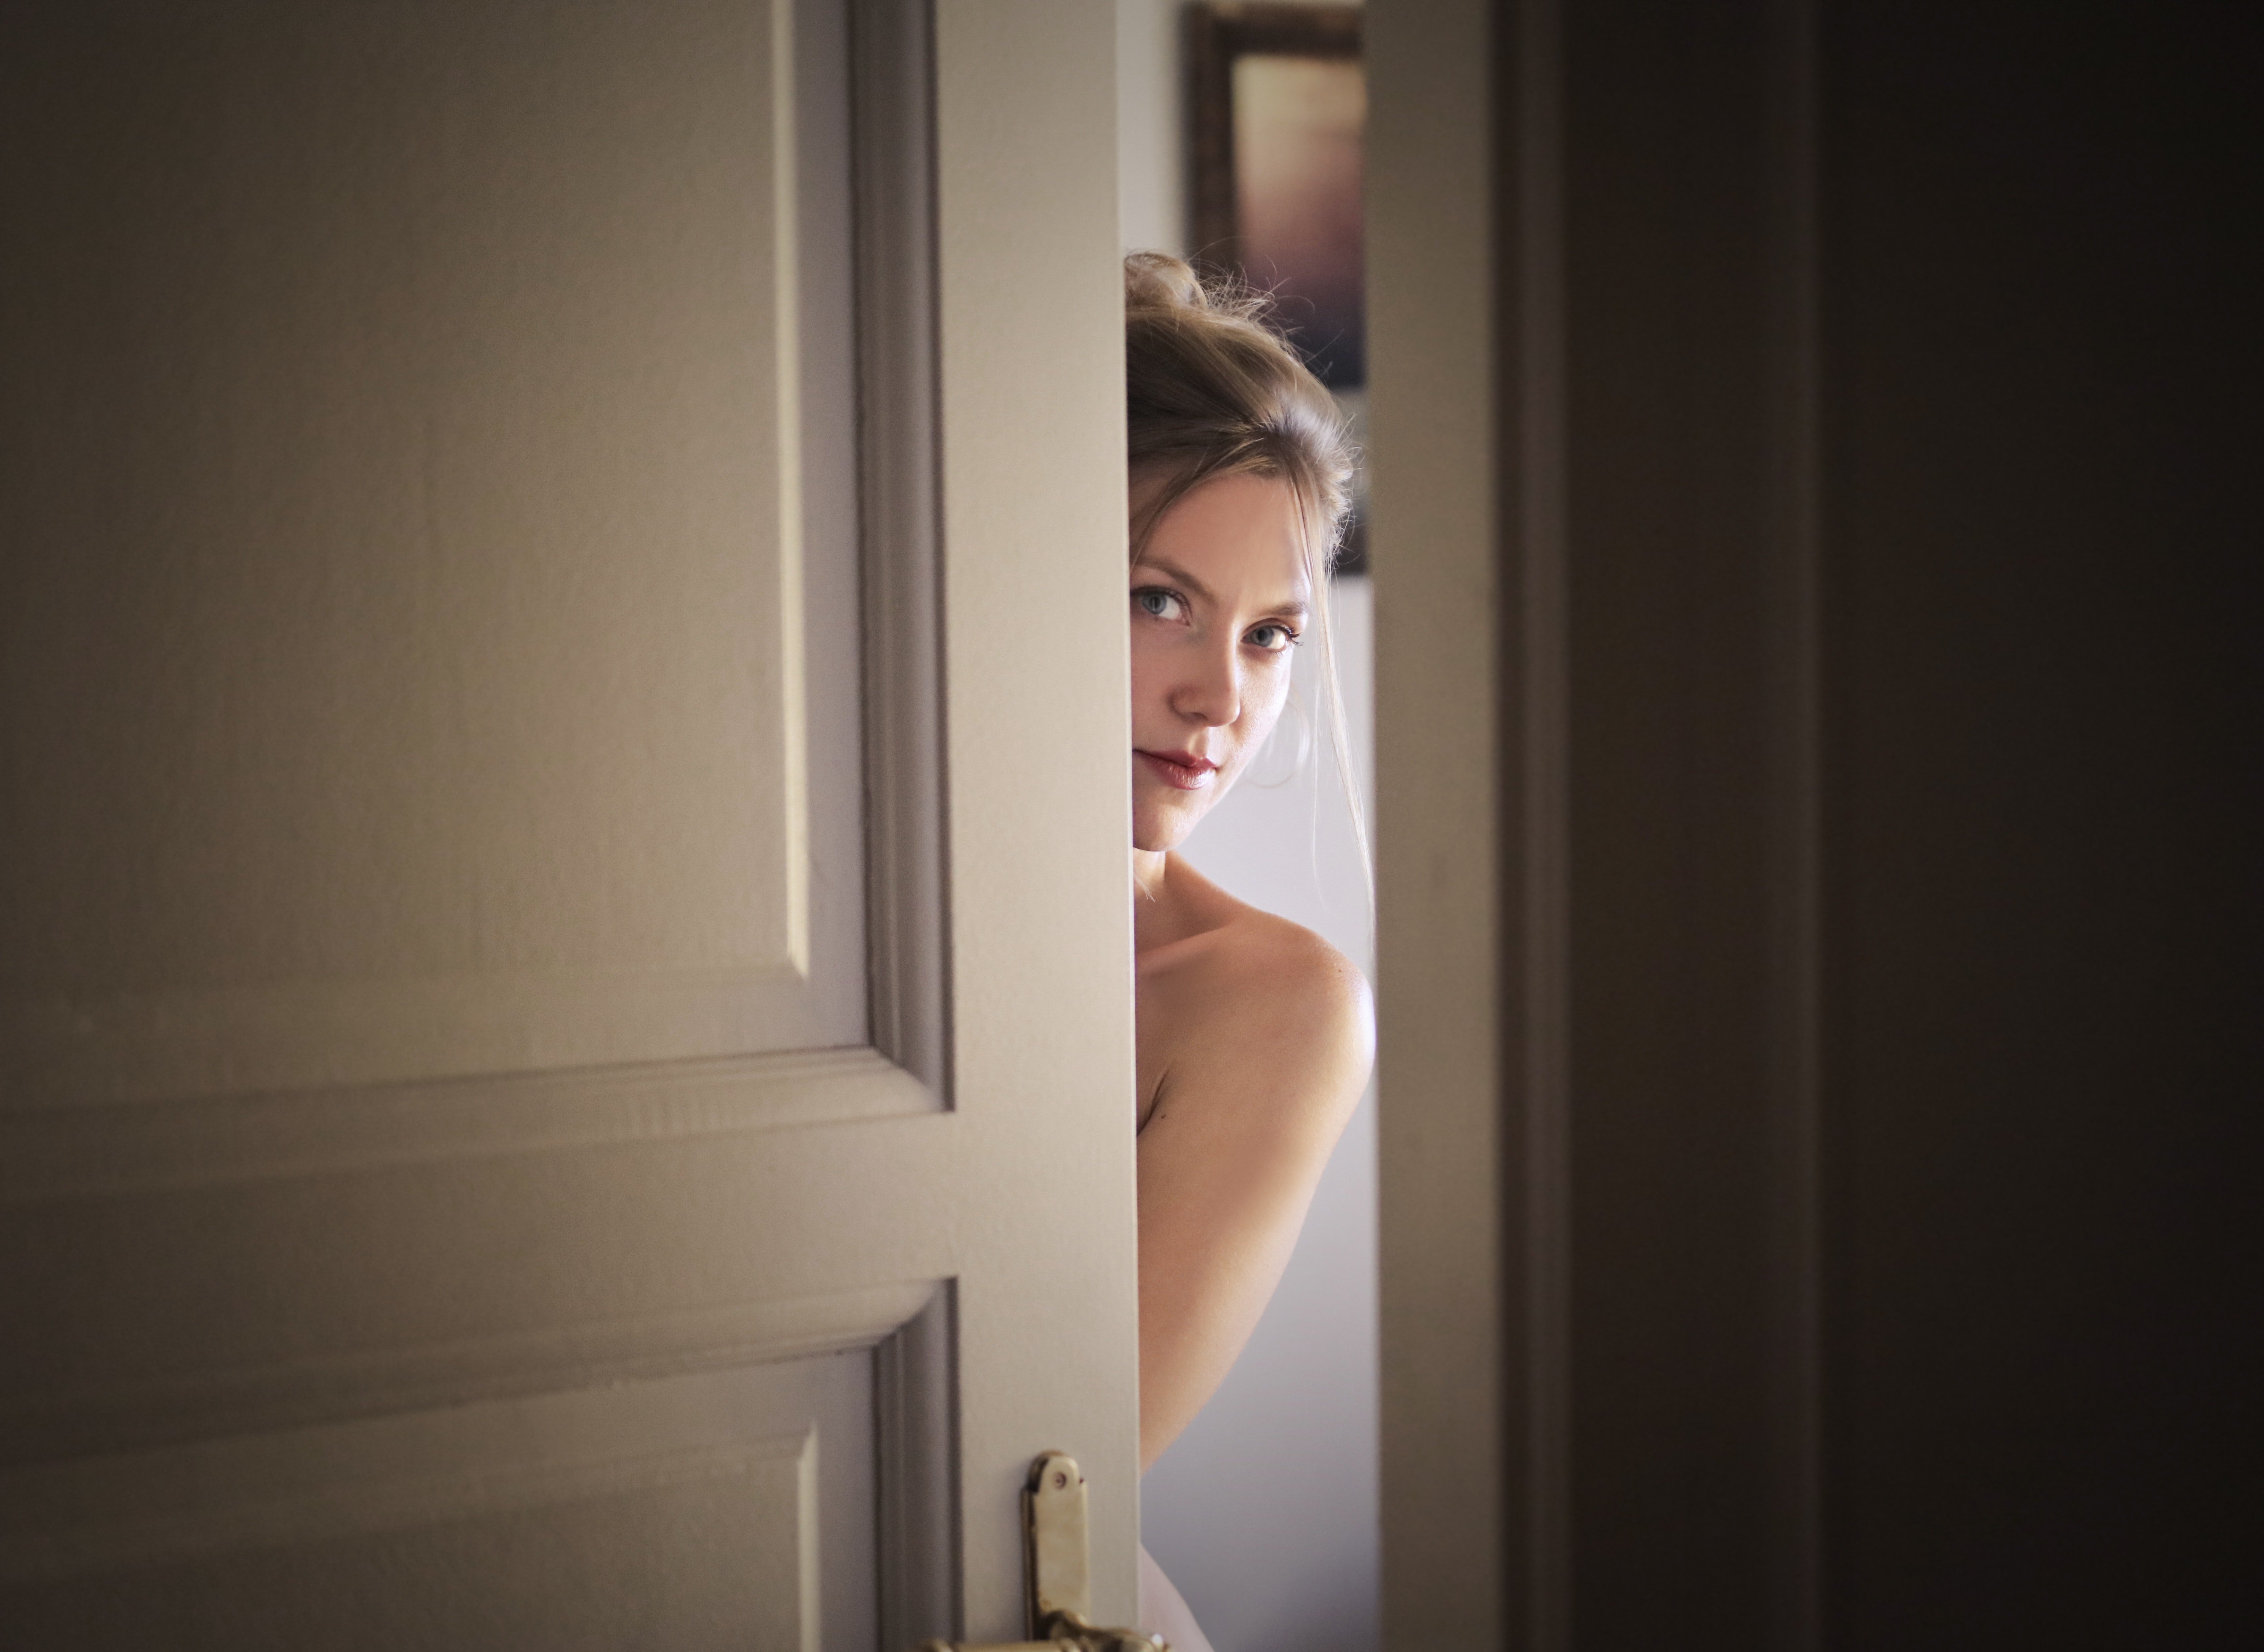 A woman behind a door. | Source: Pexels